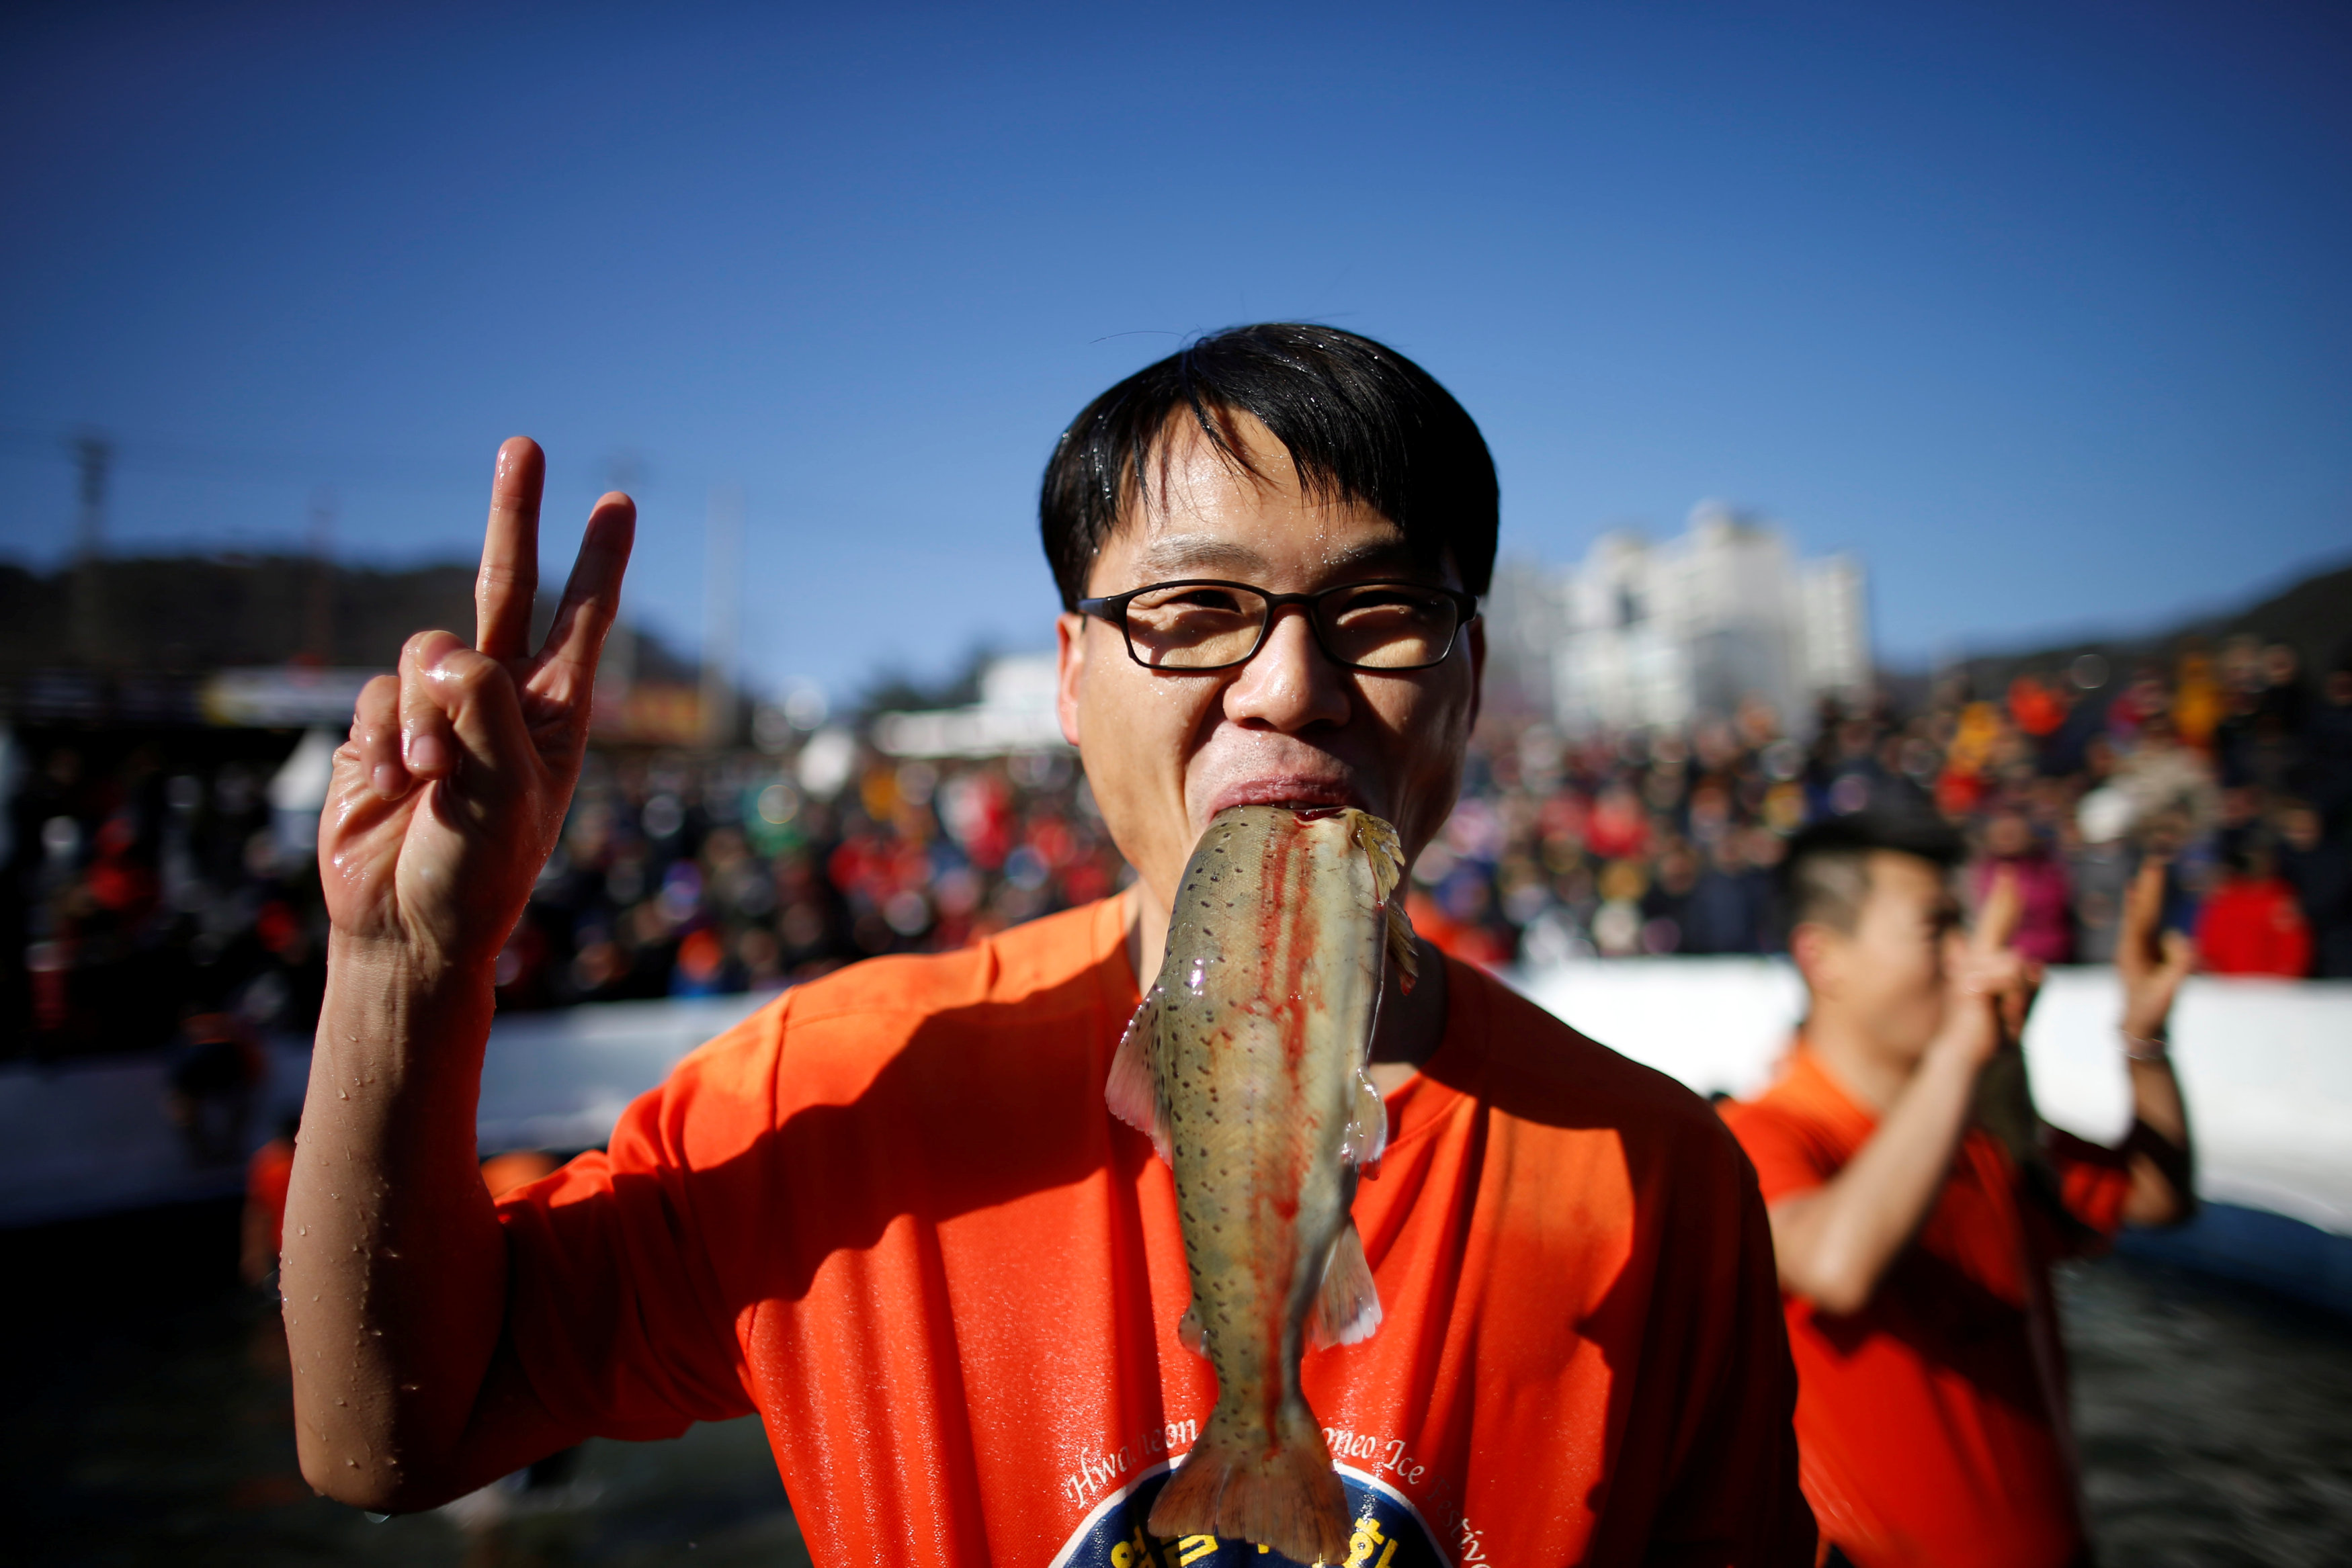 رجل يضع سمكة فى فمه خلال فعاليات مهرجان الجليد بكوريا الجنوبية